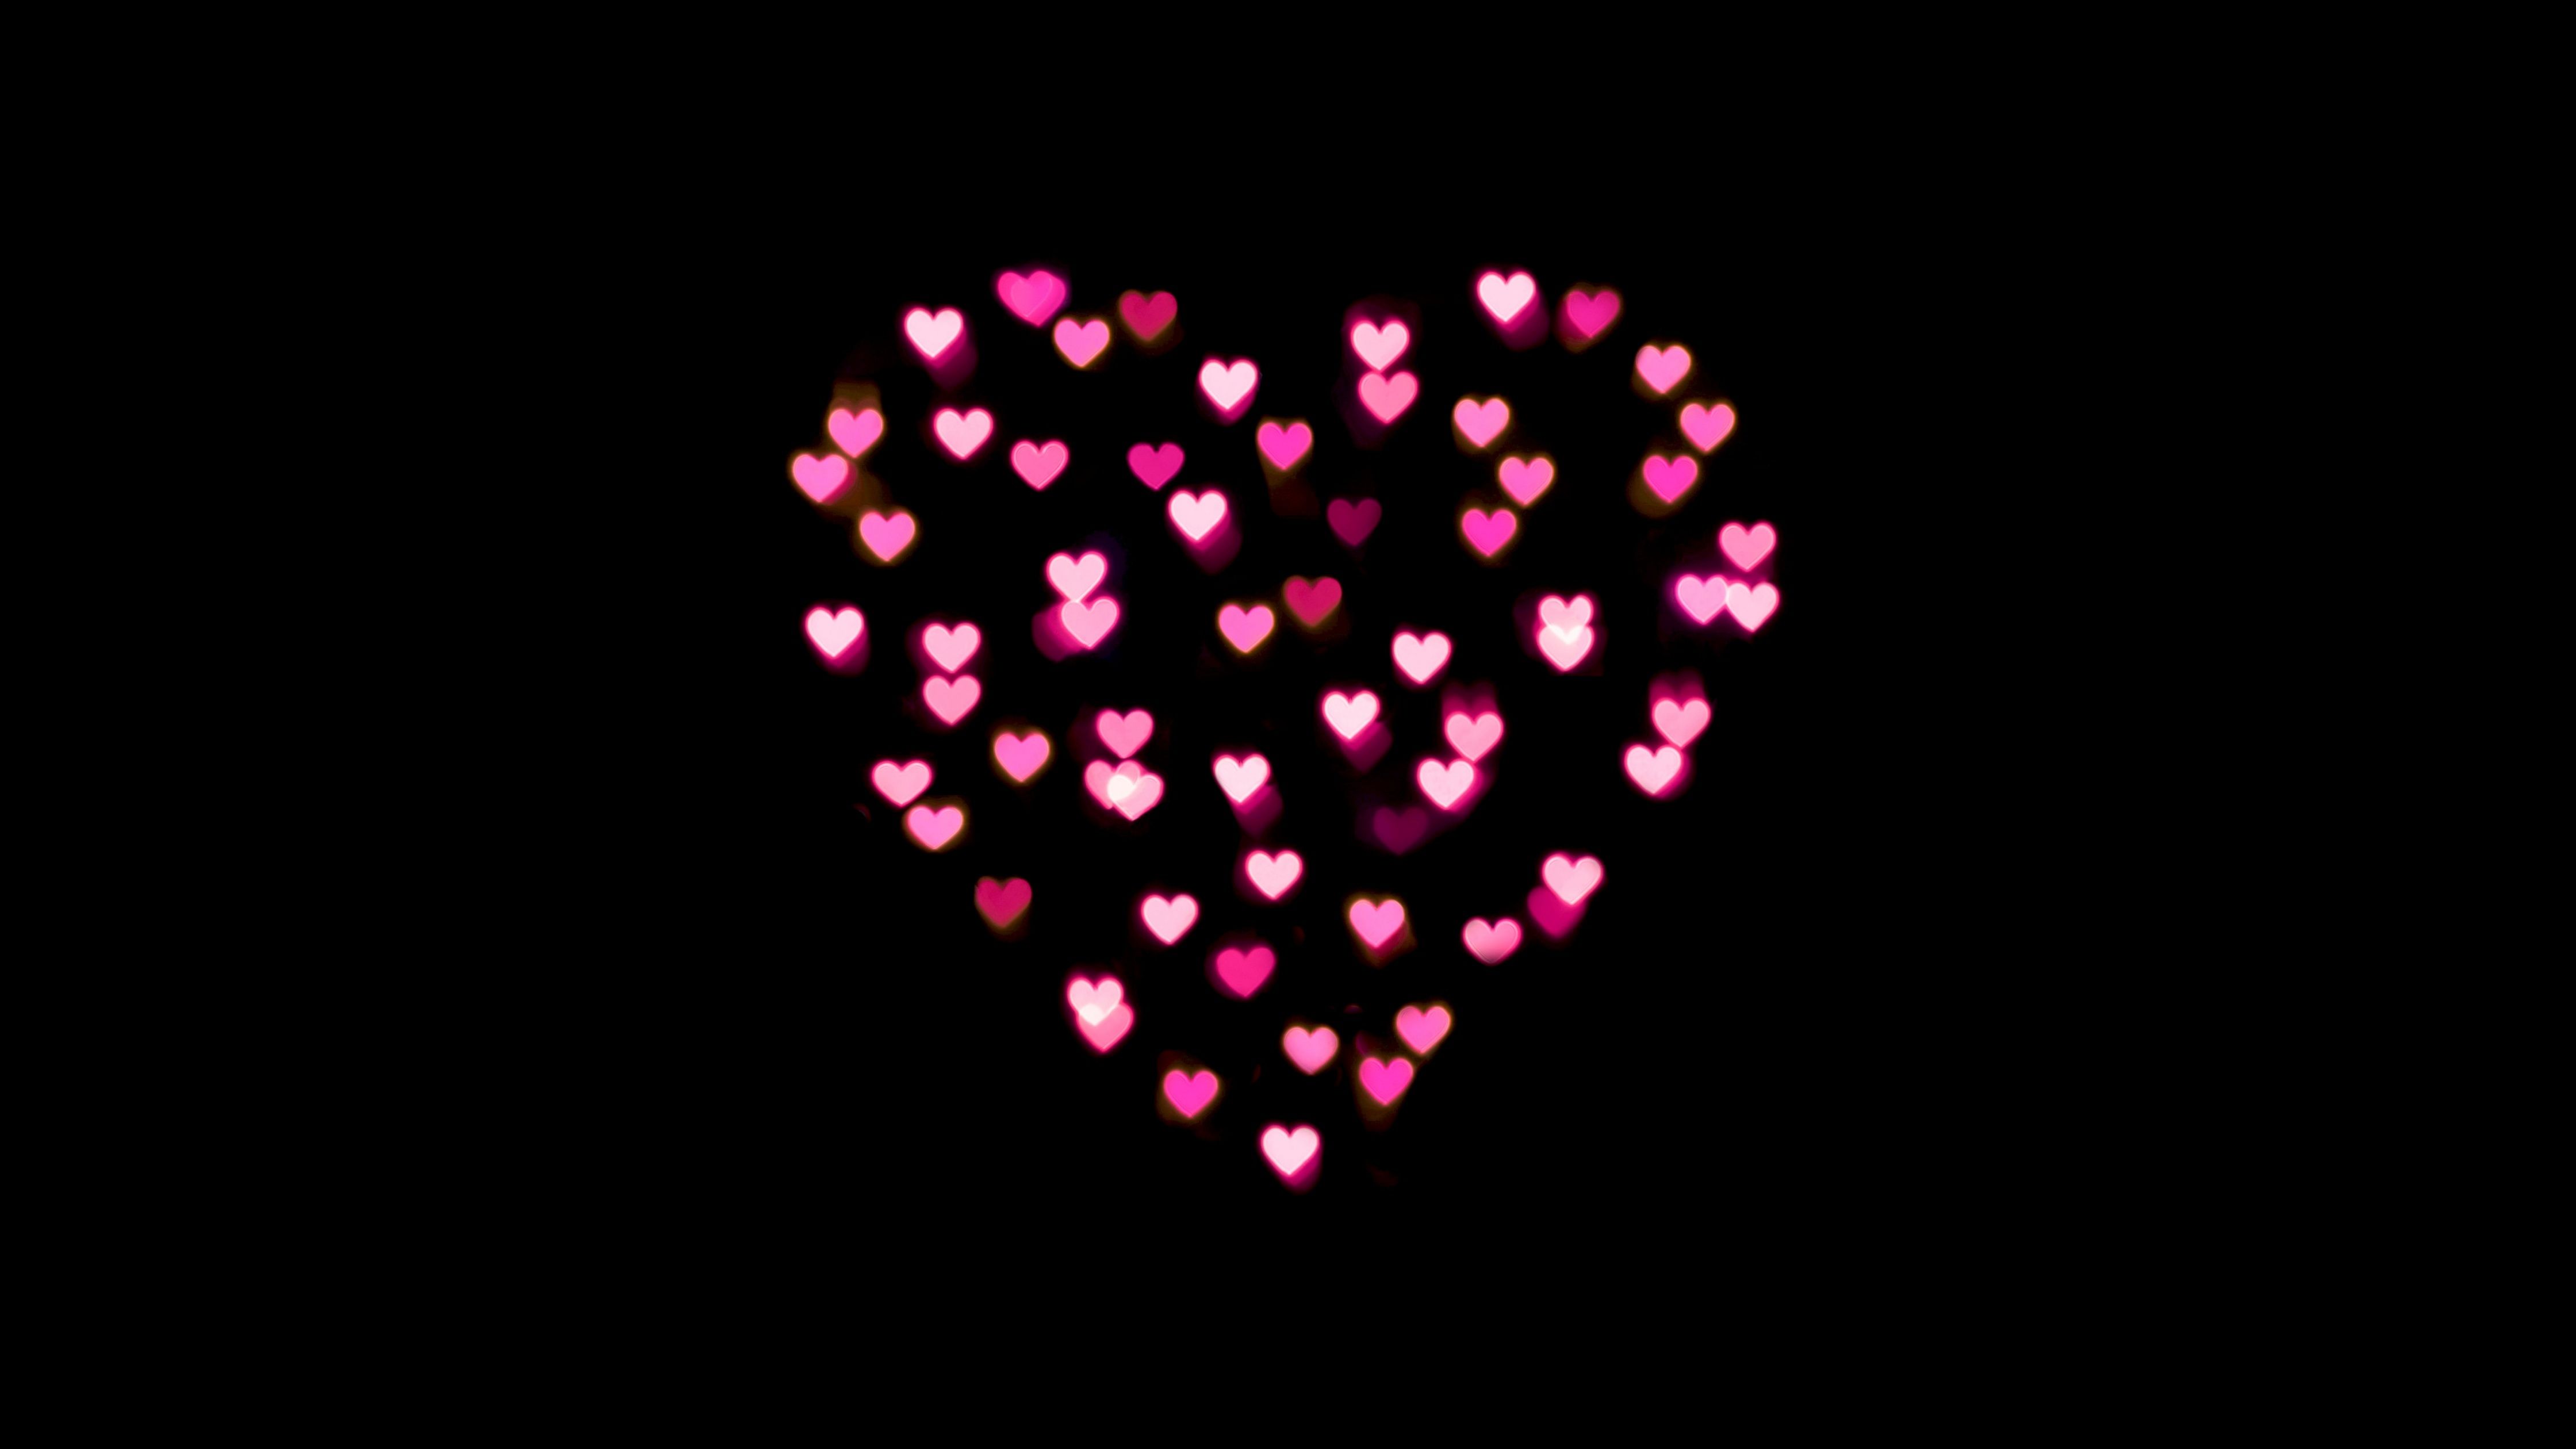 Love Heart Wallpaper 4K, Pink Hearts, Lights, Black Dark